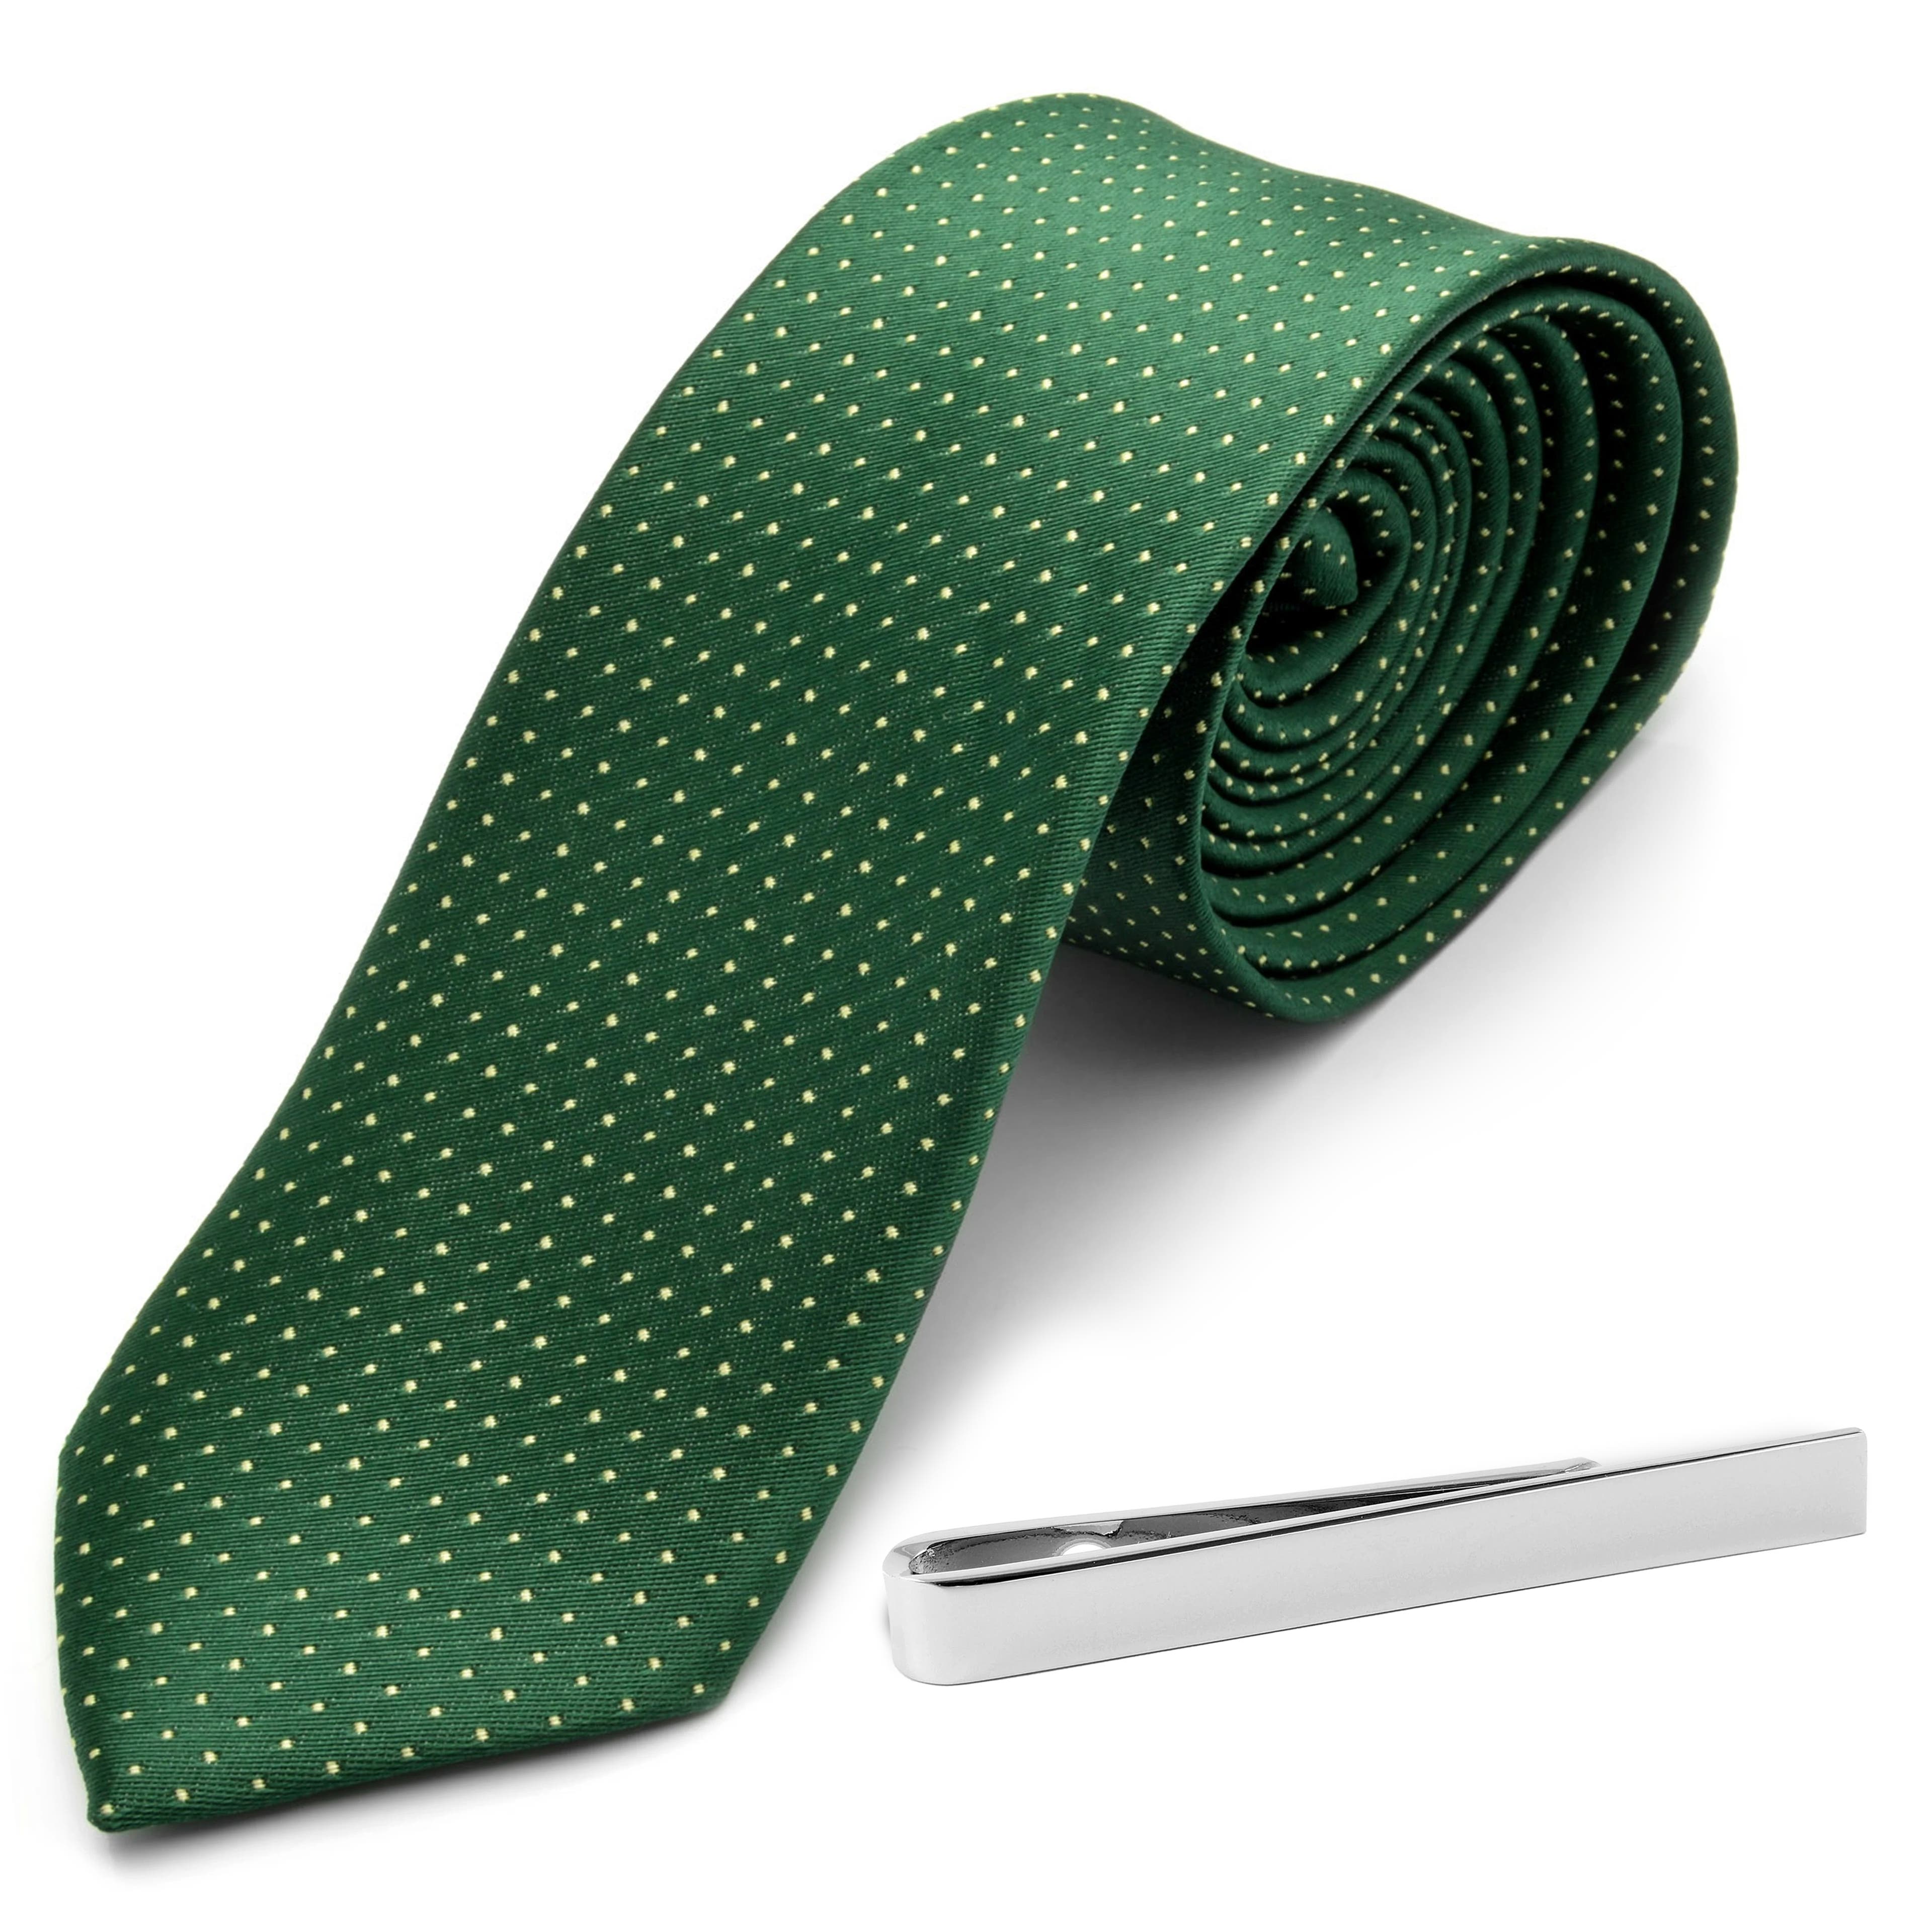 Set con cravatta verde a pois e fermacravatta color argento